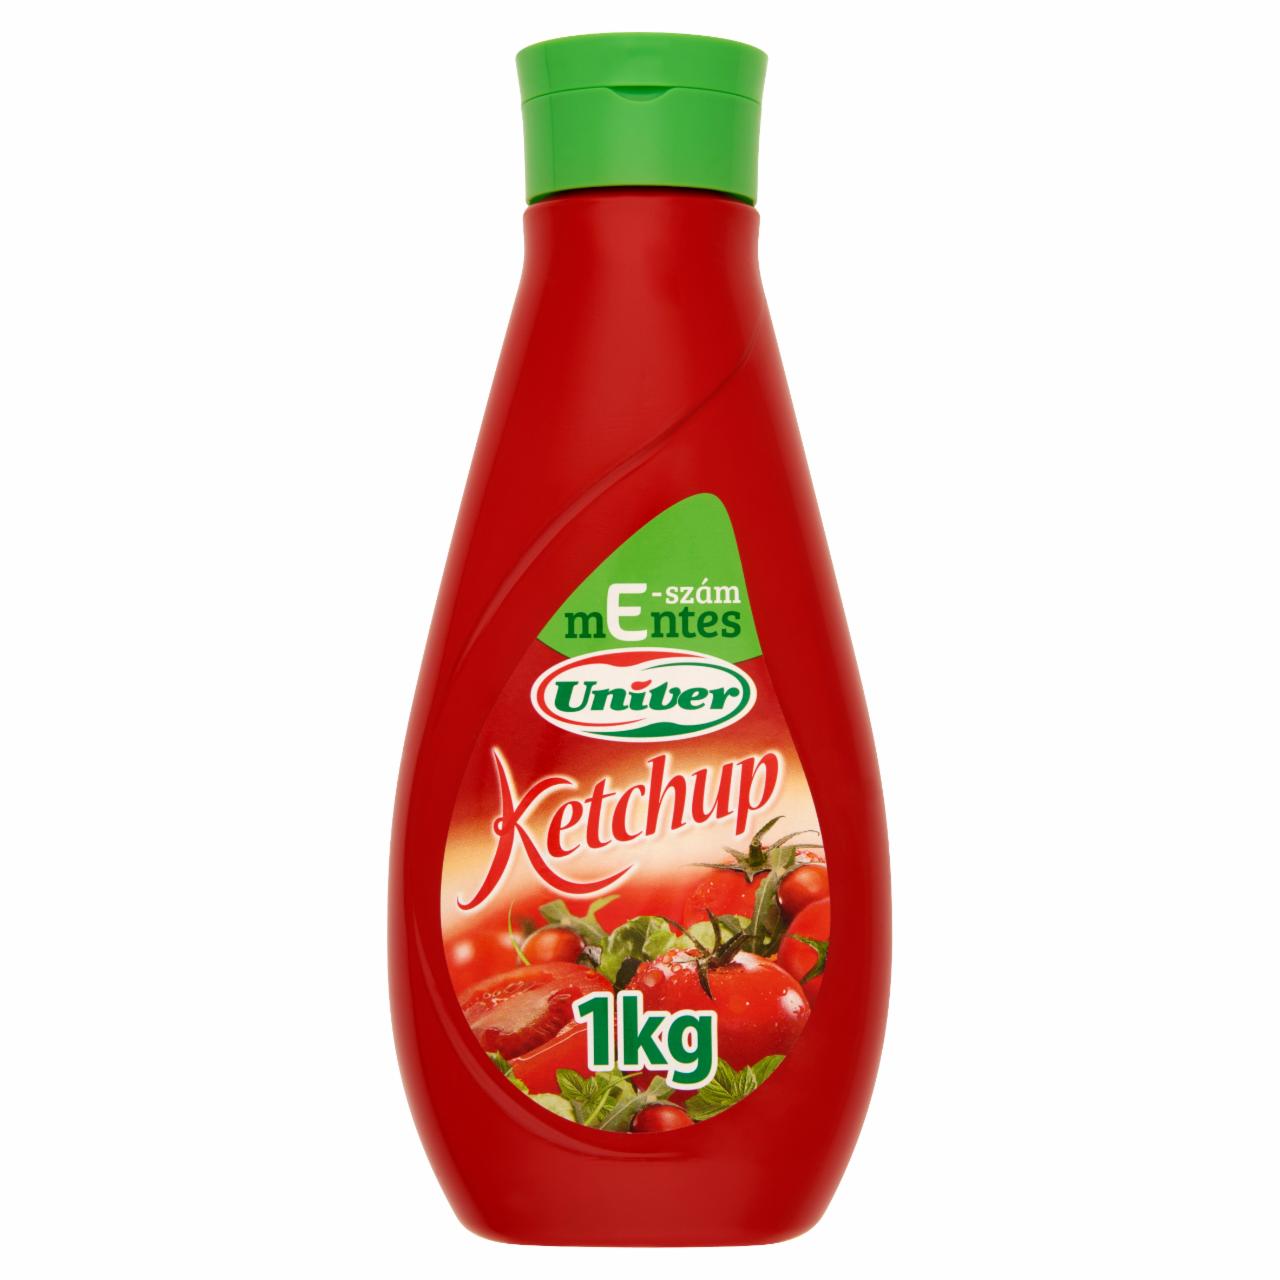 Képek - Univer ketchup 1 kg